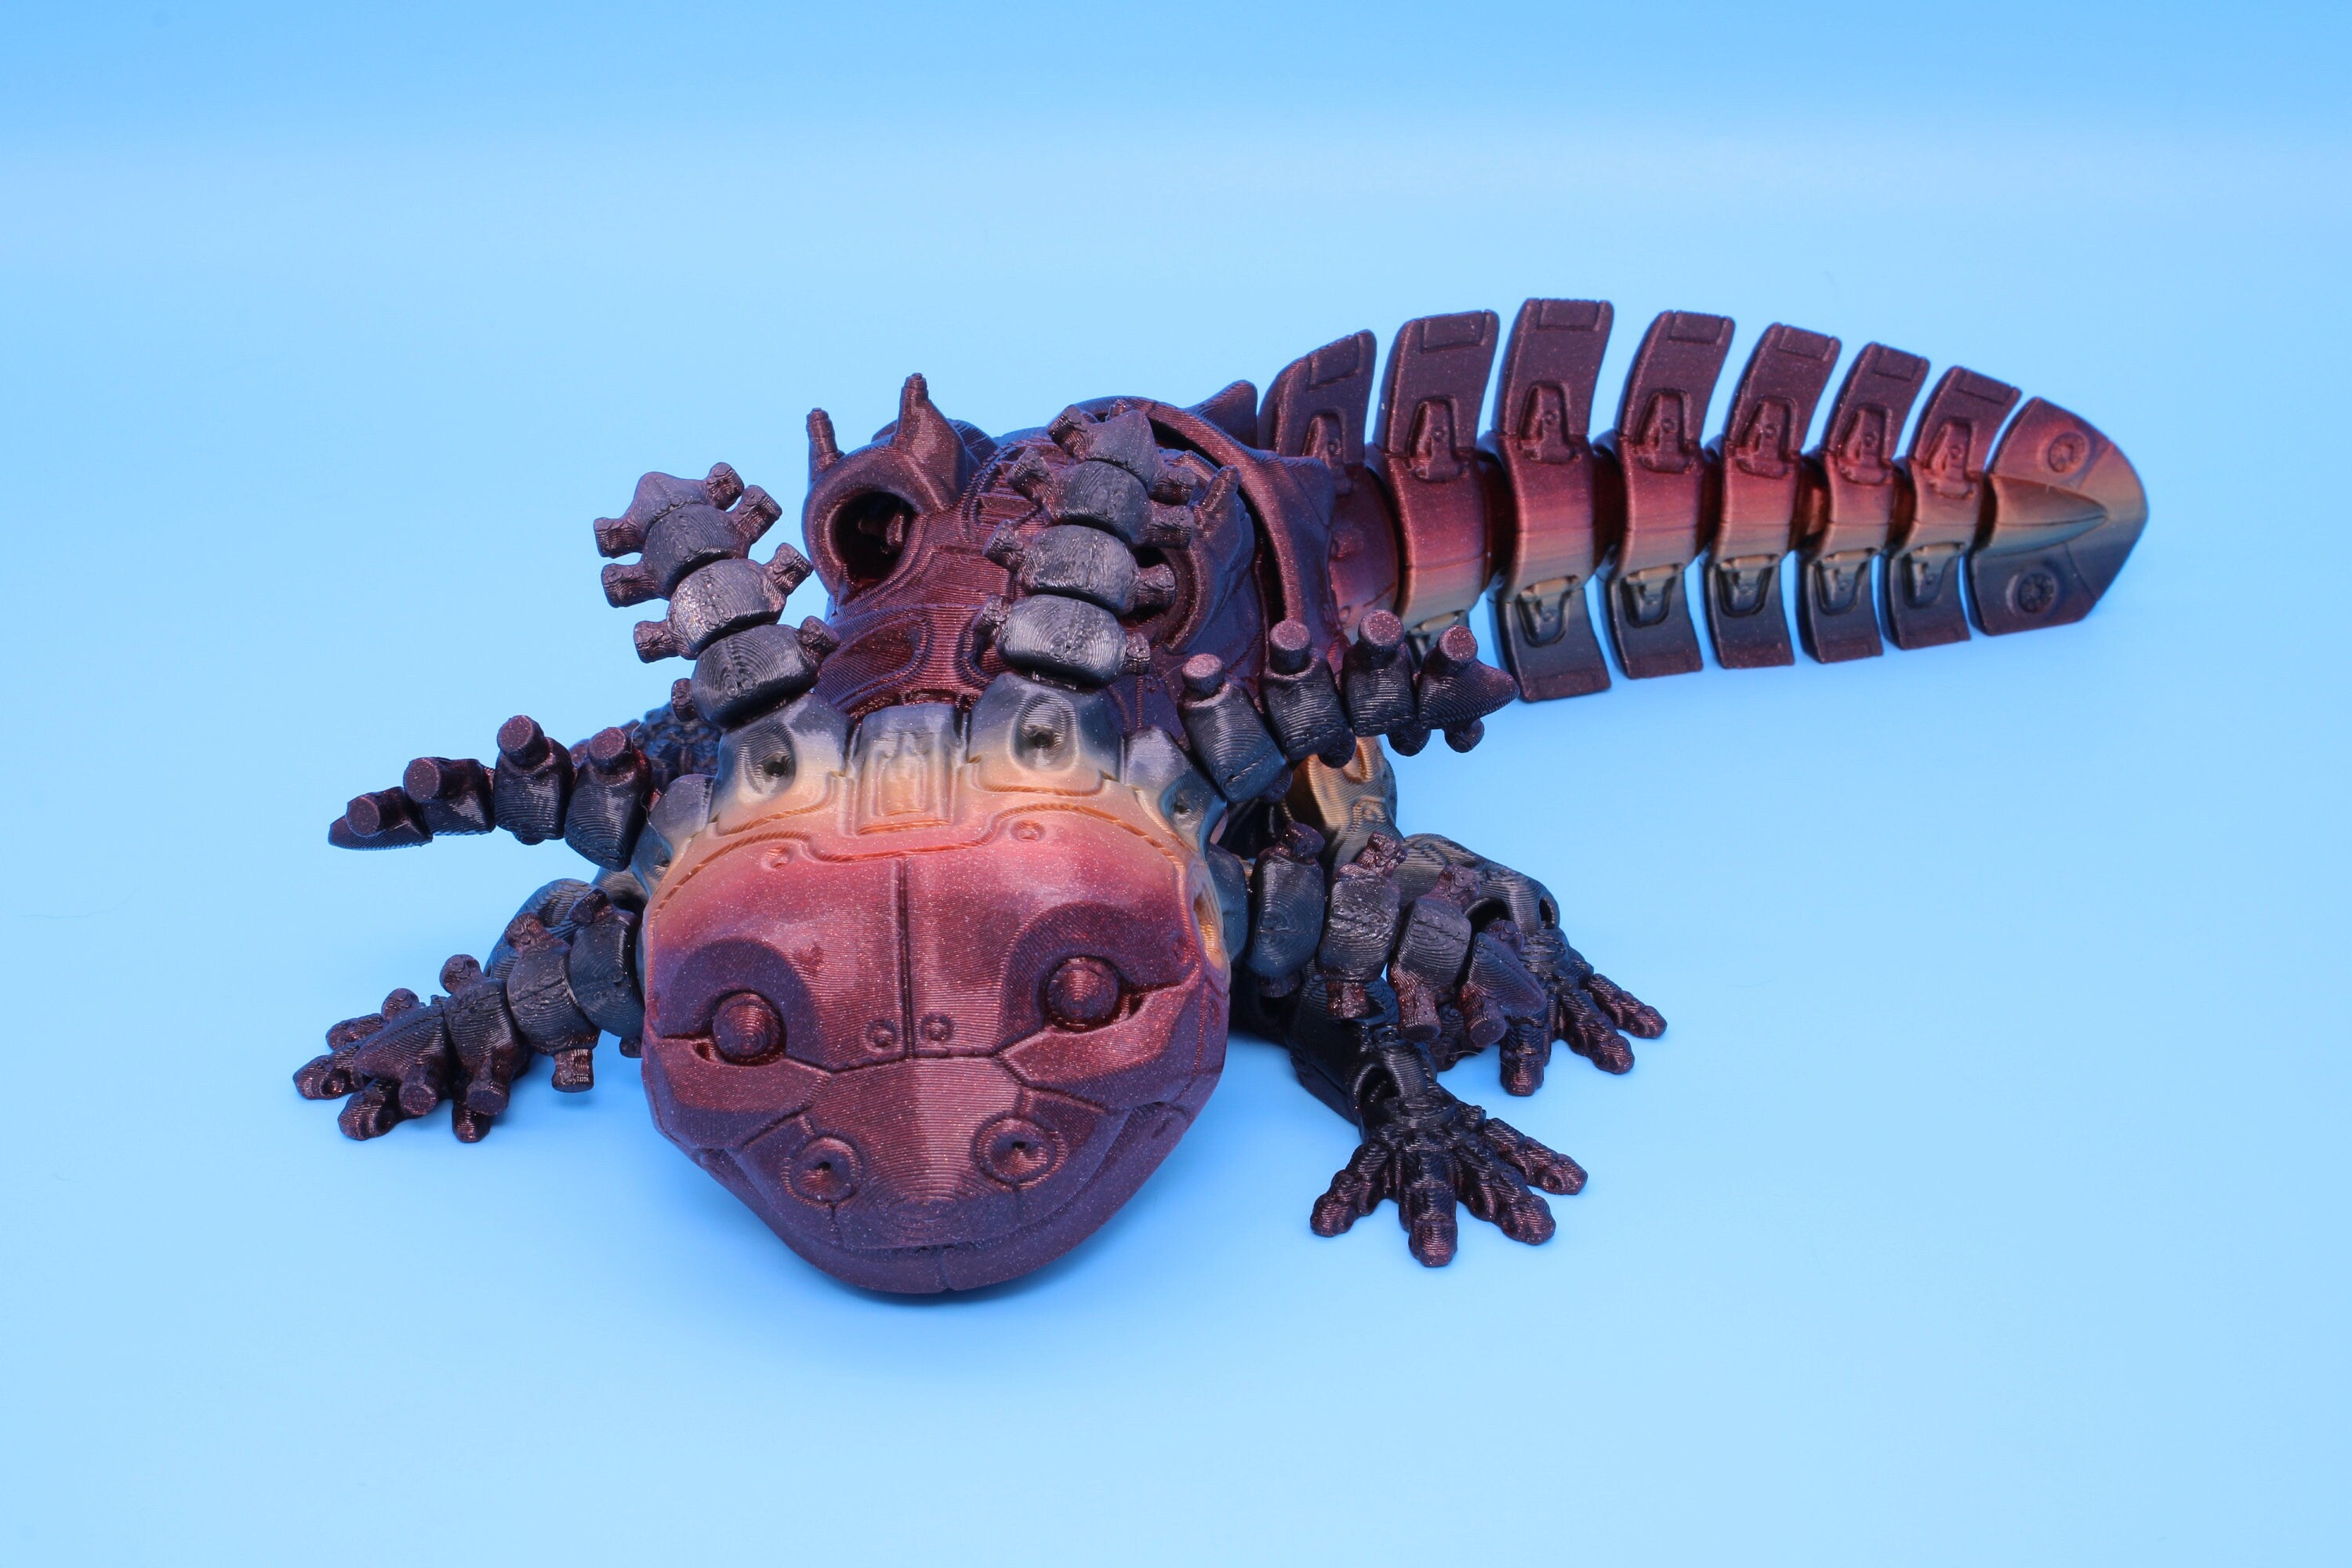 Robolotl the Robot Axolotl | Flexi Toy | Articulating Fidget Toy | Made to Order